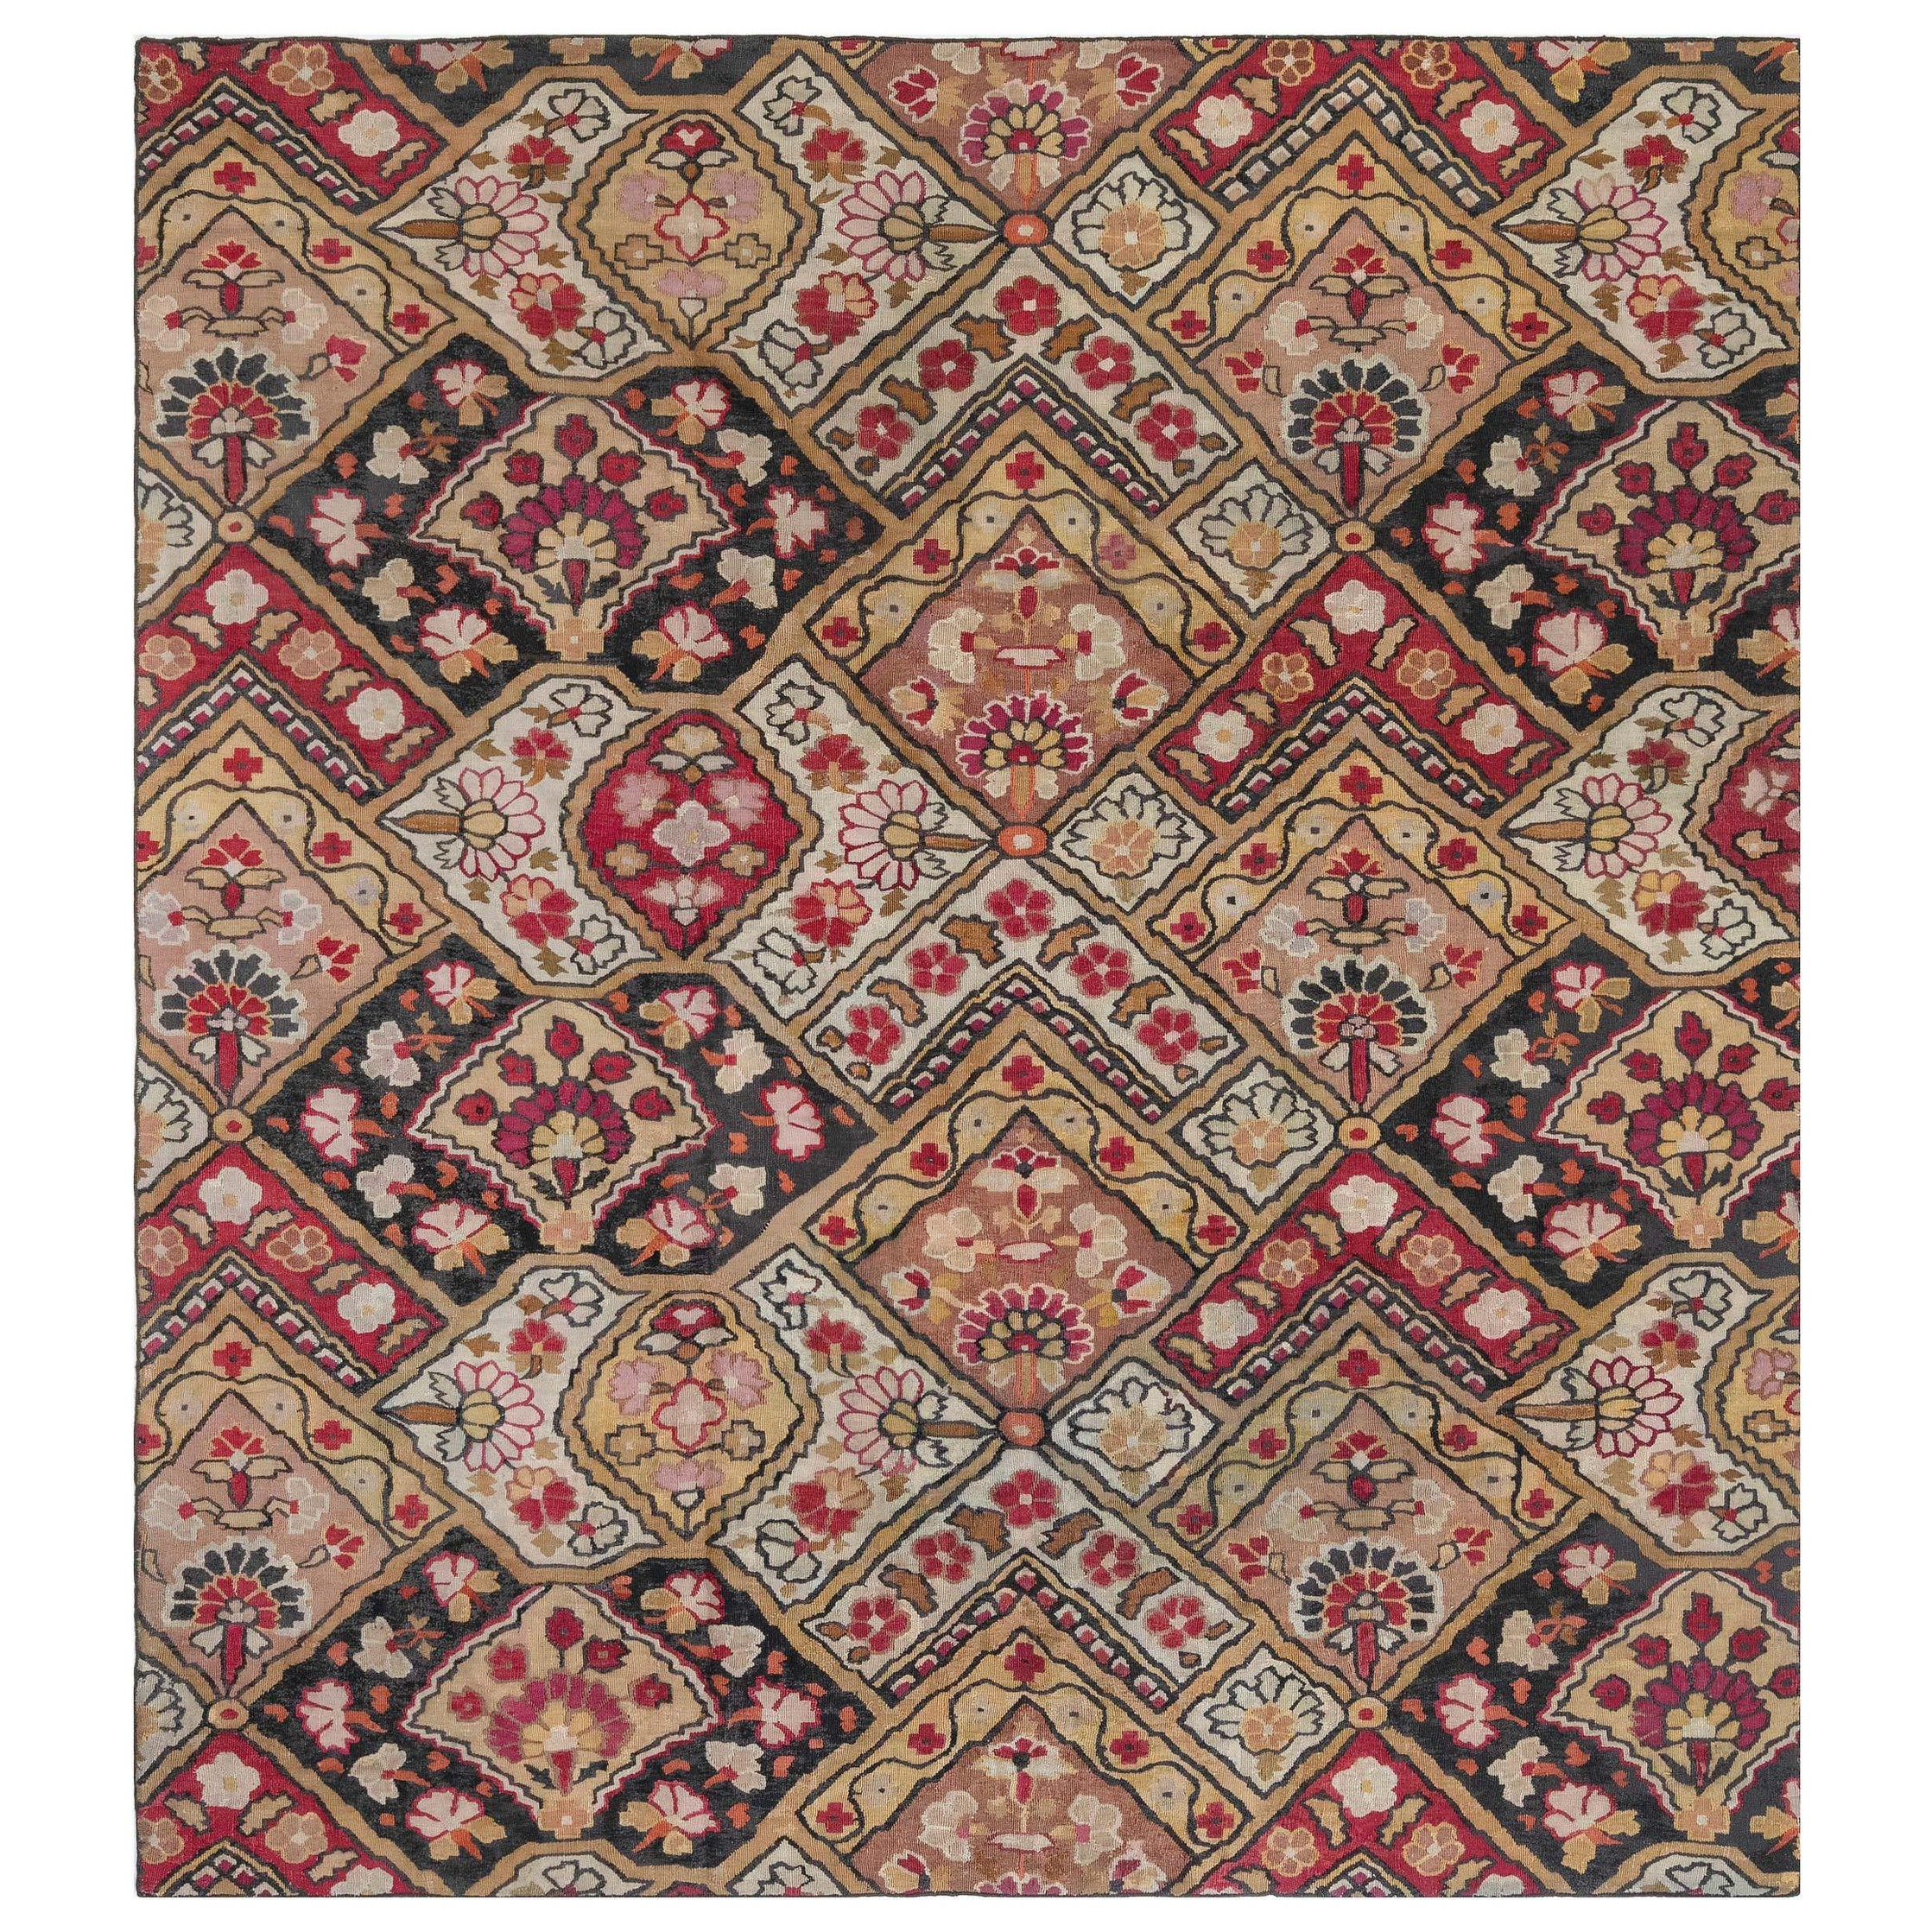 Authentique tapis d'Aubusson français du 19ème siècle fait à la main